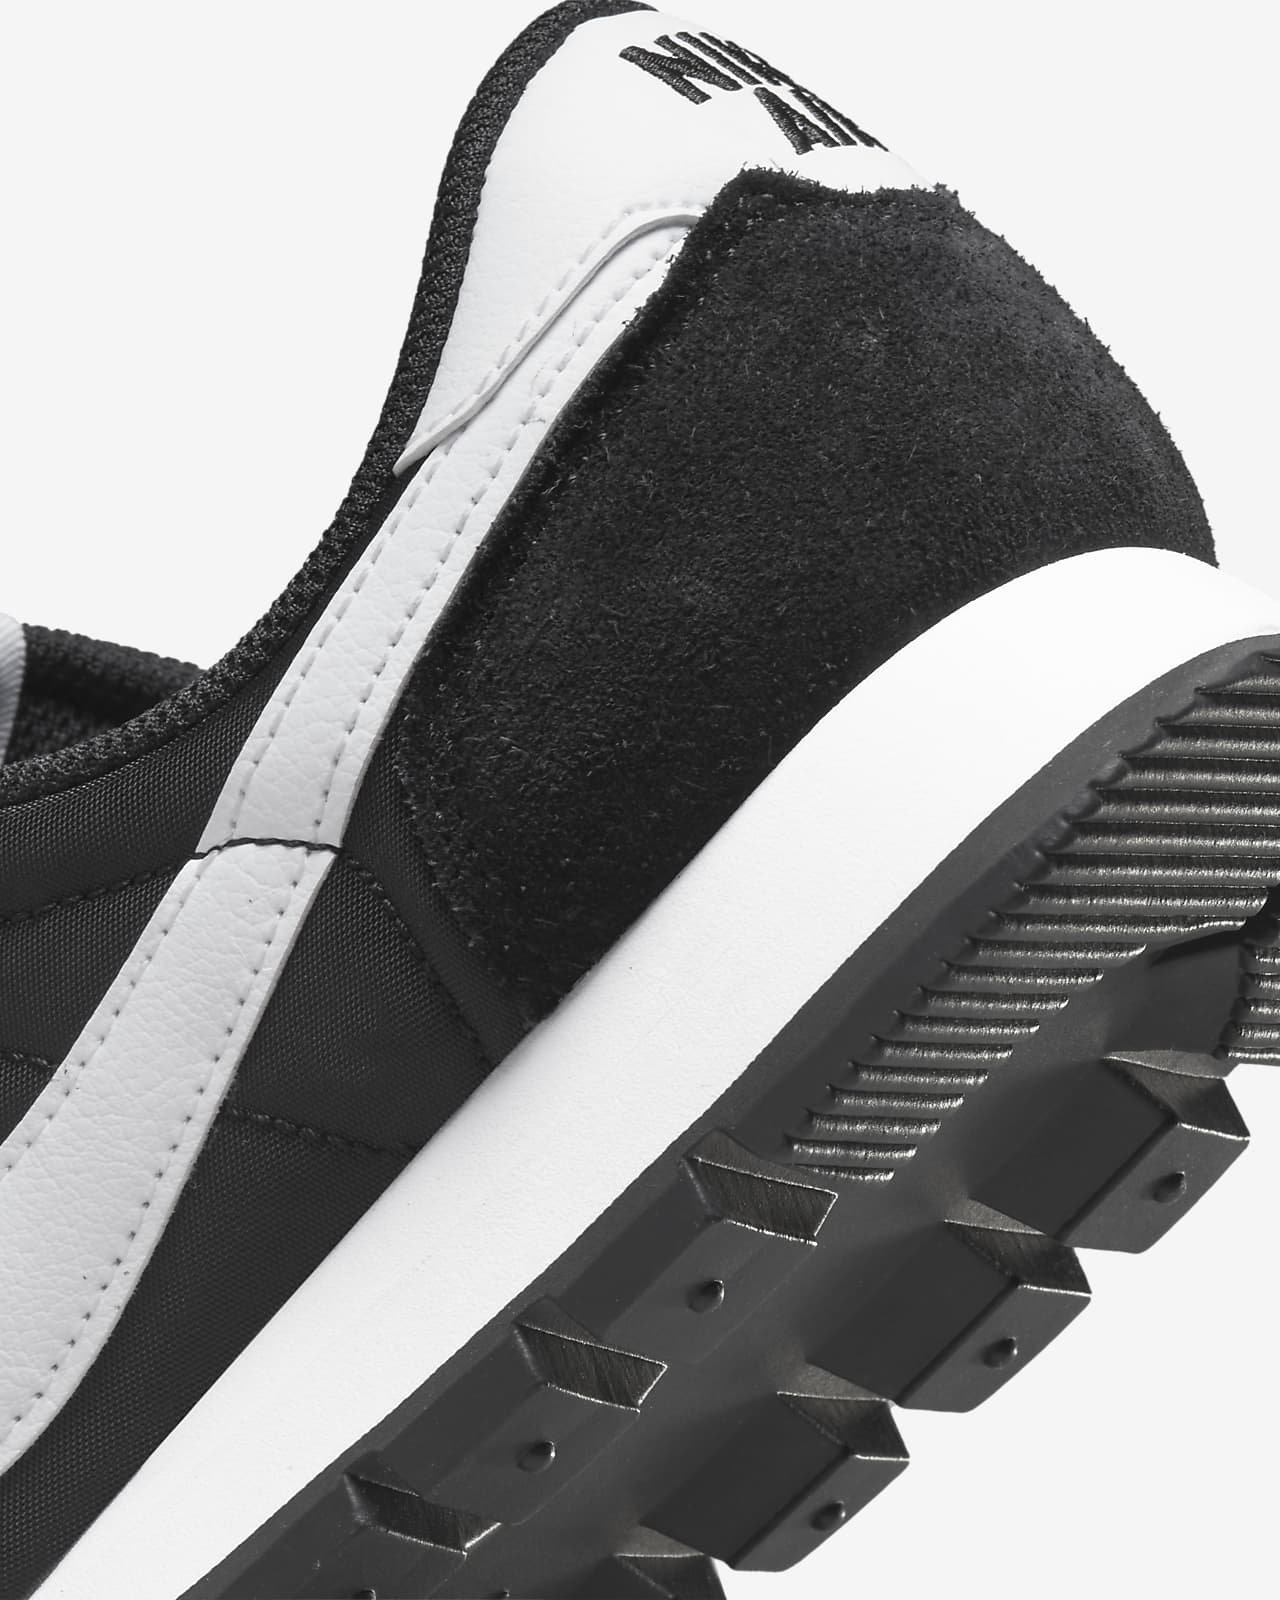 Suposiciones, suposiciones. Adivinar Volverse loco Antología Nike Air Pegasus 83 Men's Shoes. Nike.com